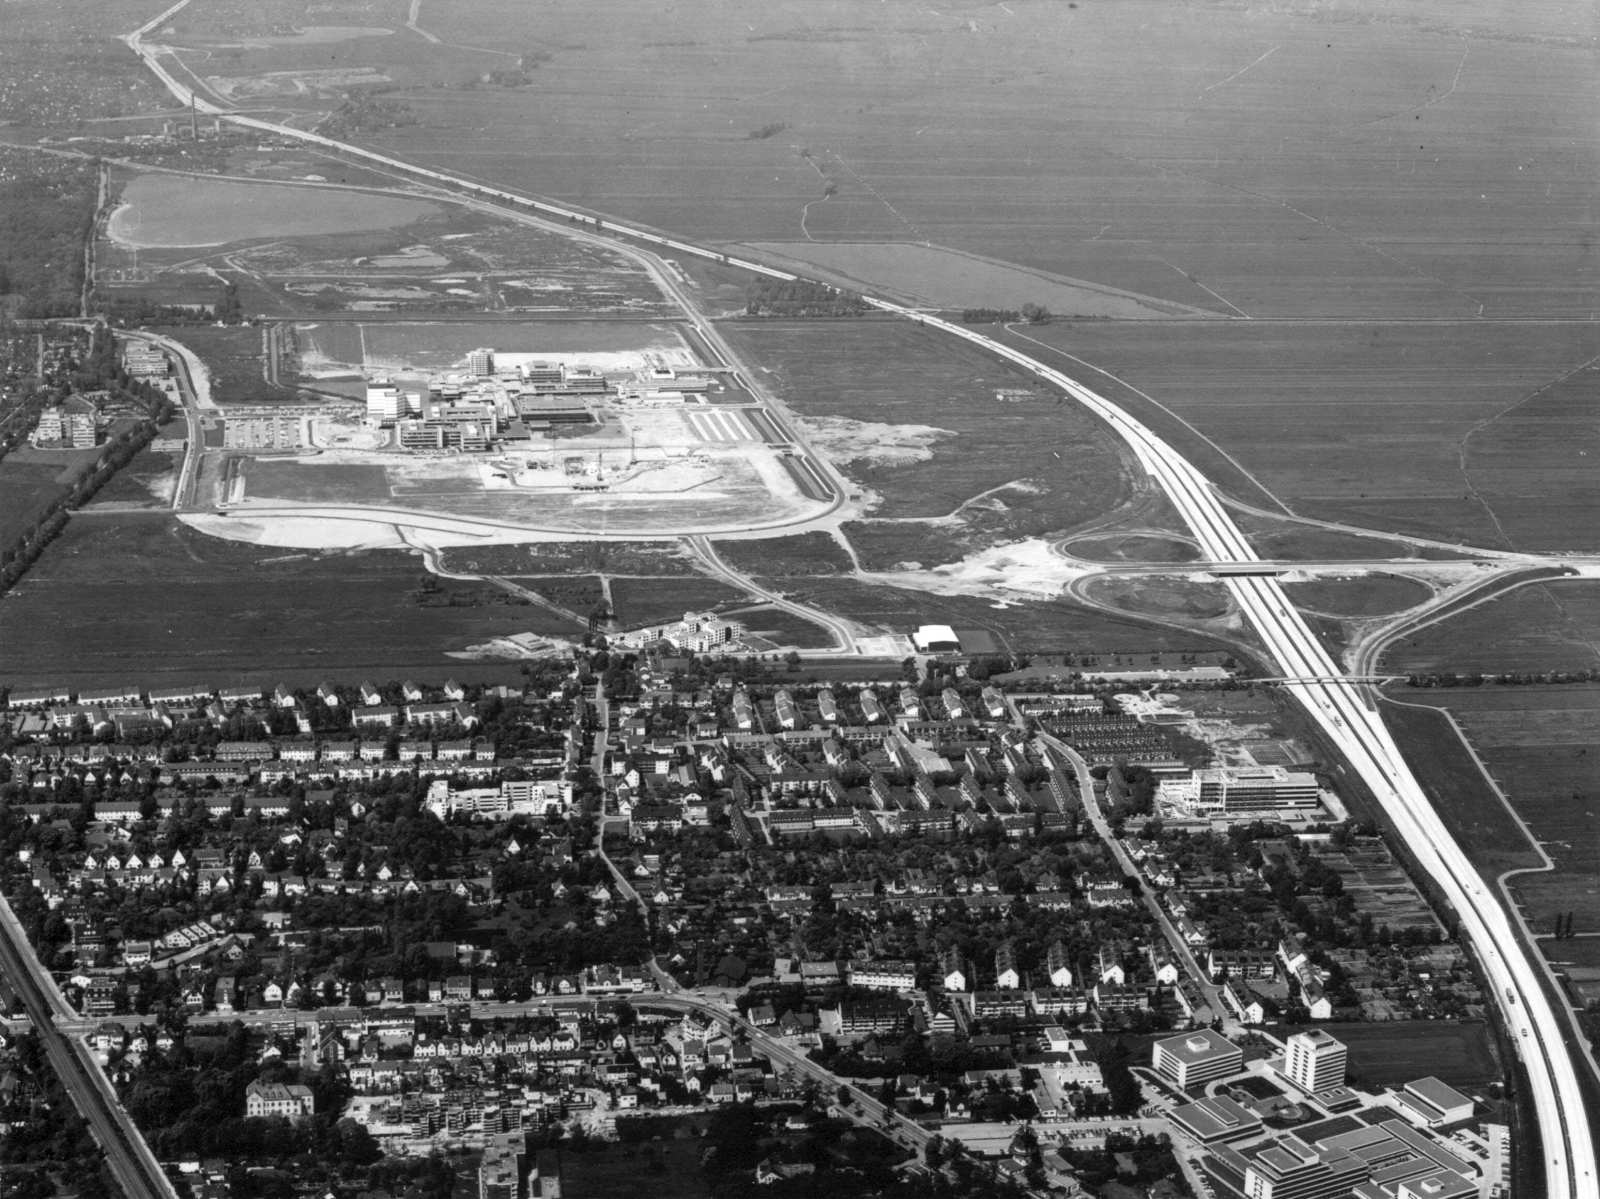 Eine Luftbildaufnahme zeigt den Campus der Universität im Jahr 1975. Im Westen begrenzt der Uni-See das Areal, im Osten zieht eine Reihe Wohnhäuser von Horn-Lehe eine klare Grenze. Die Autobahn begrenzt das Areal nach Norden. Auf der gegenüberliegenden Se